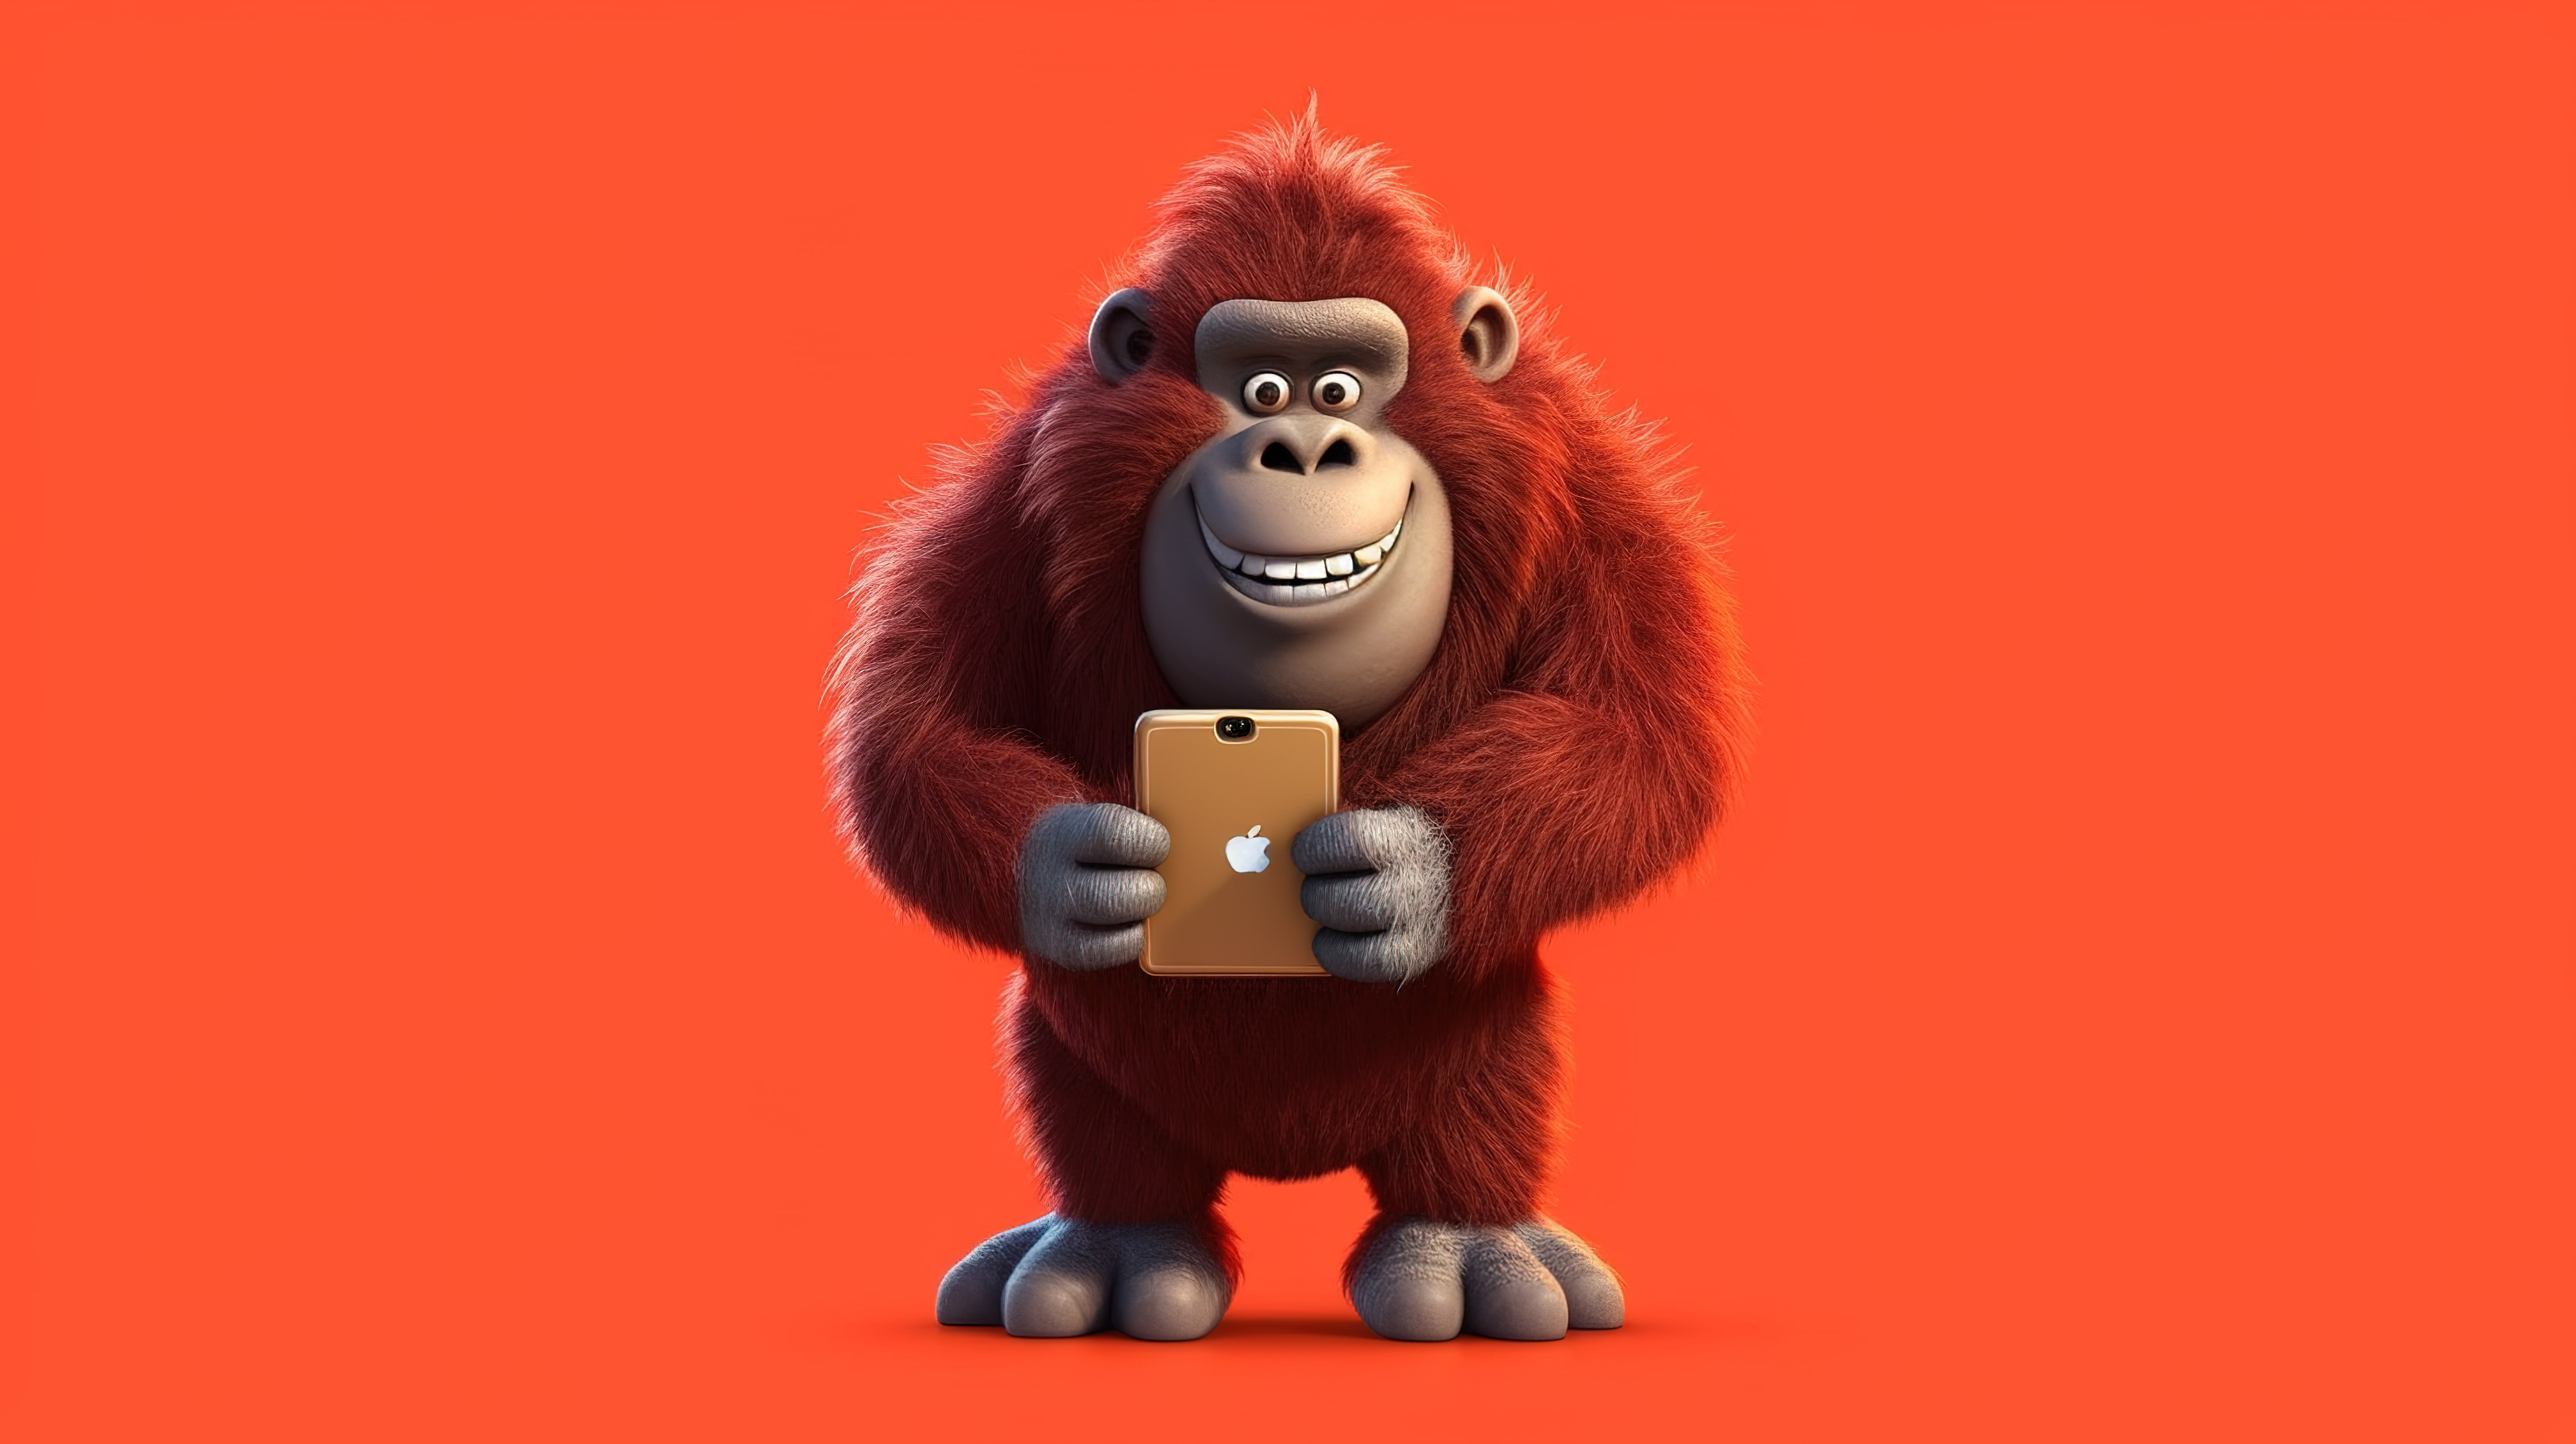 可爱的 3D 大猩猩，拿着手机，有幽默感图片